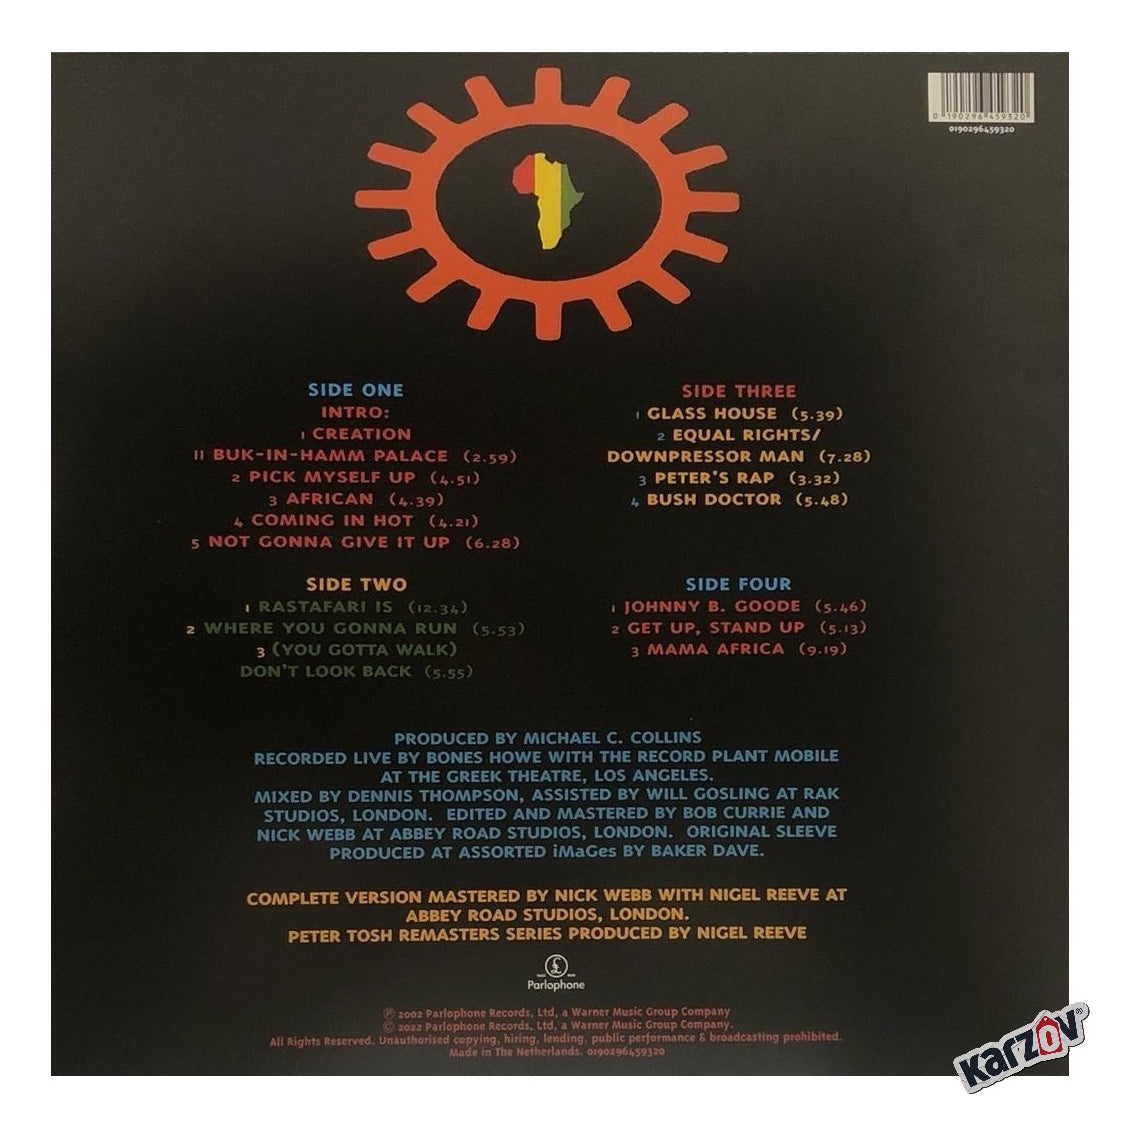 Peter Tosh Complete Captured Live 2 Lp Vinyl